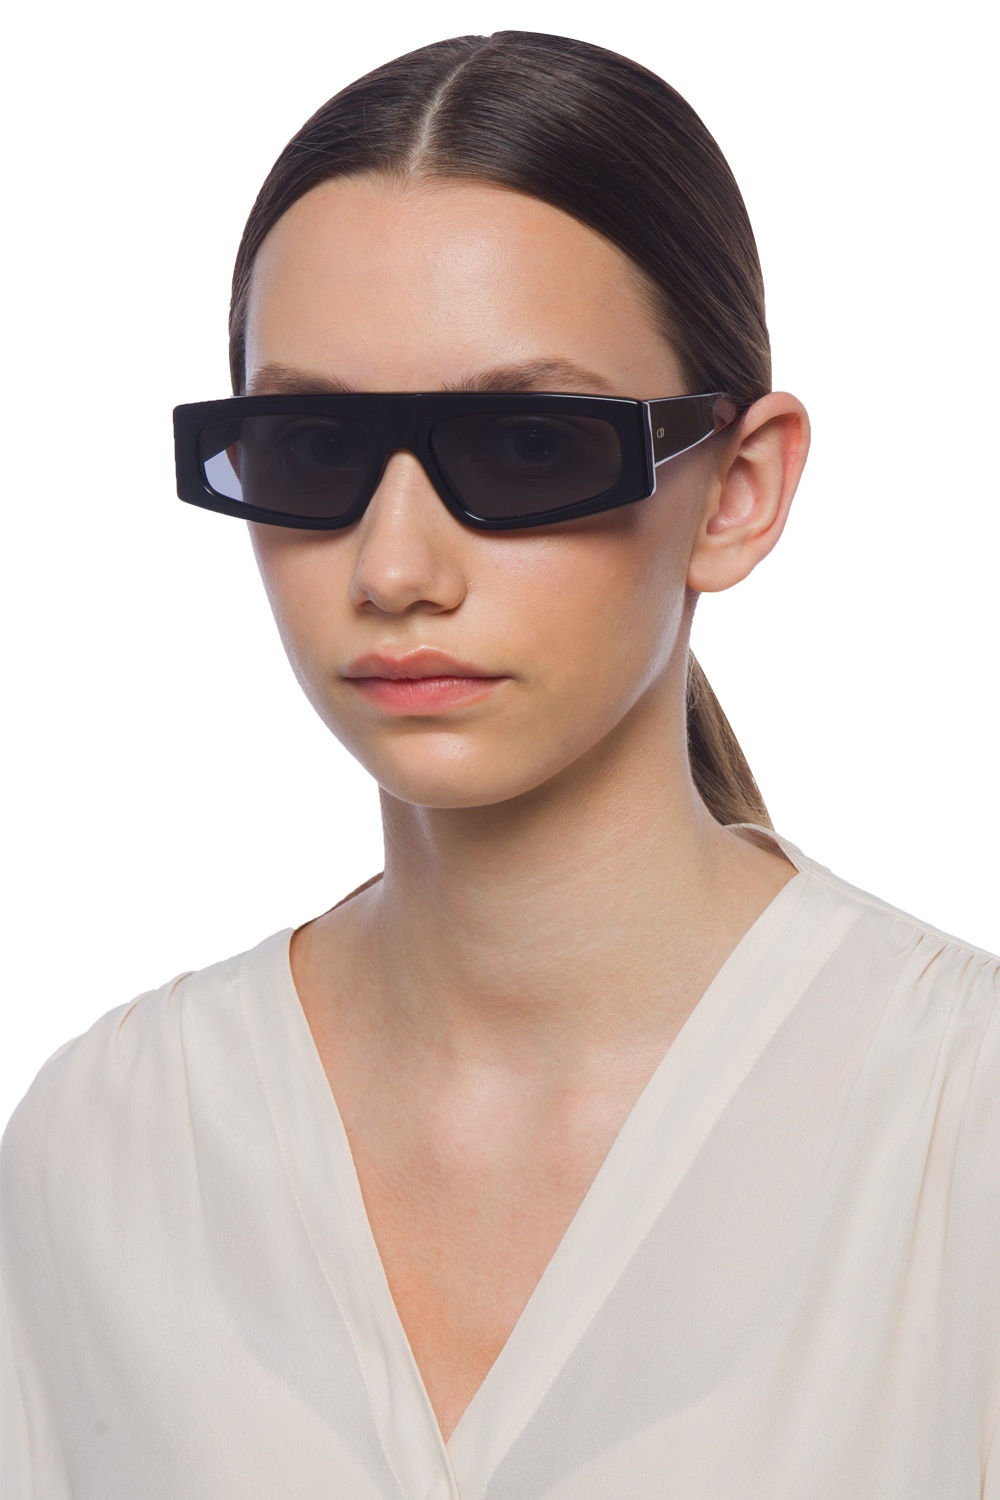 Power' sunglasses Dior - Vitkac Australia